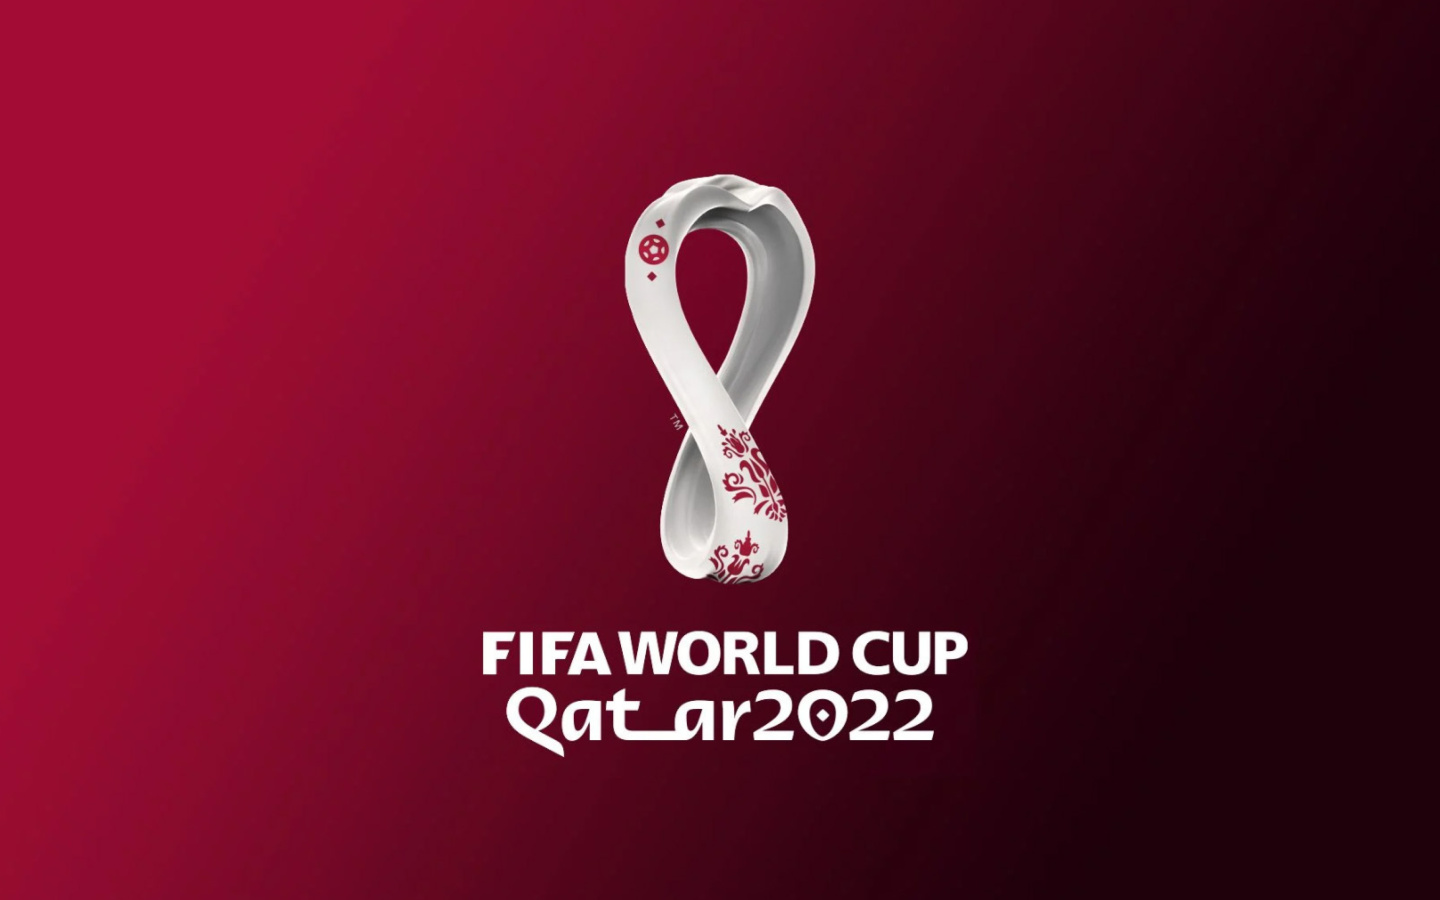 Das World Cup Qatar 2022 Wallpaper 1440x900